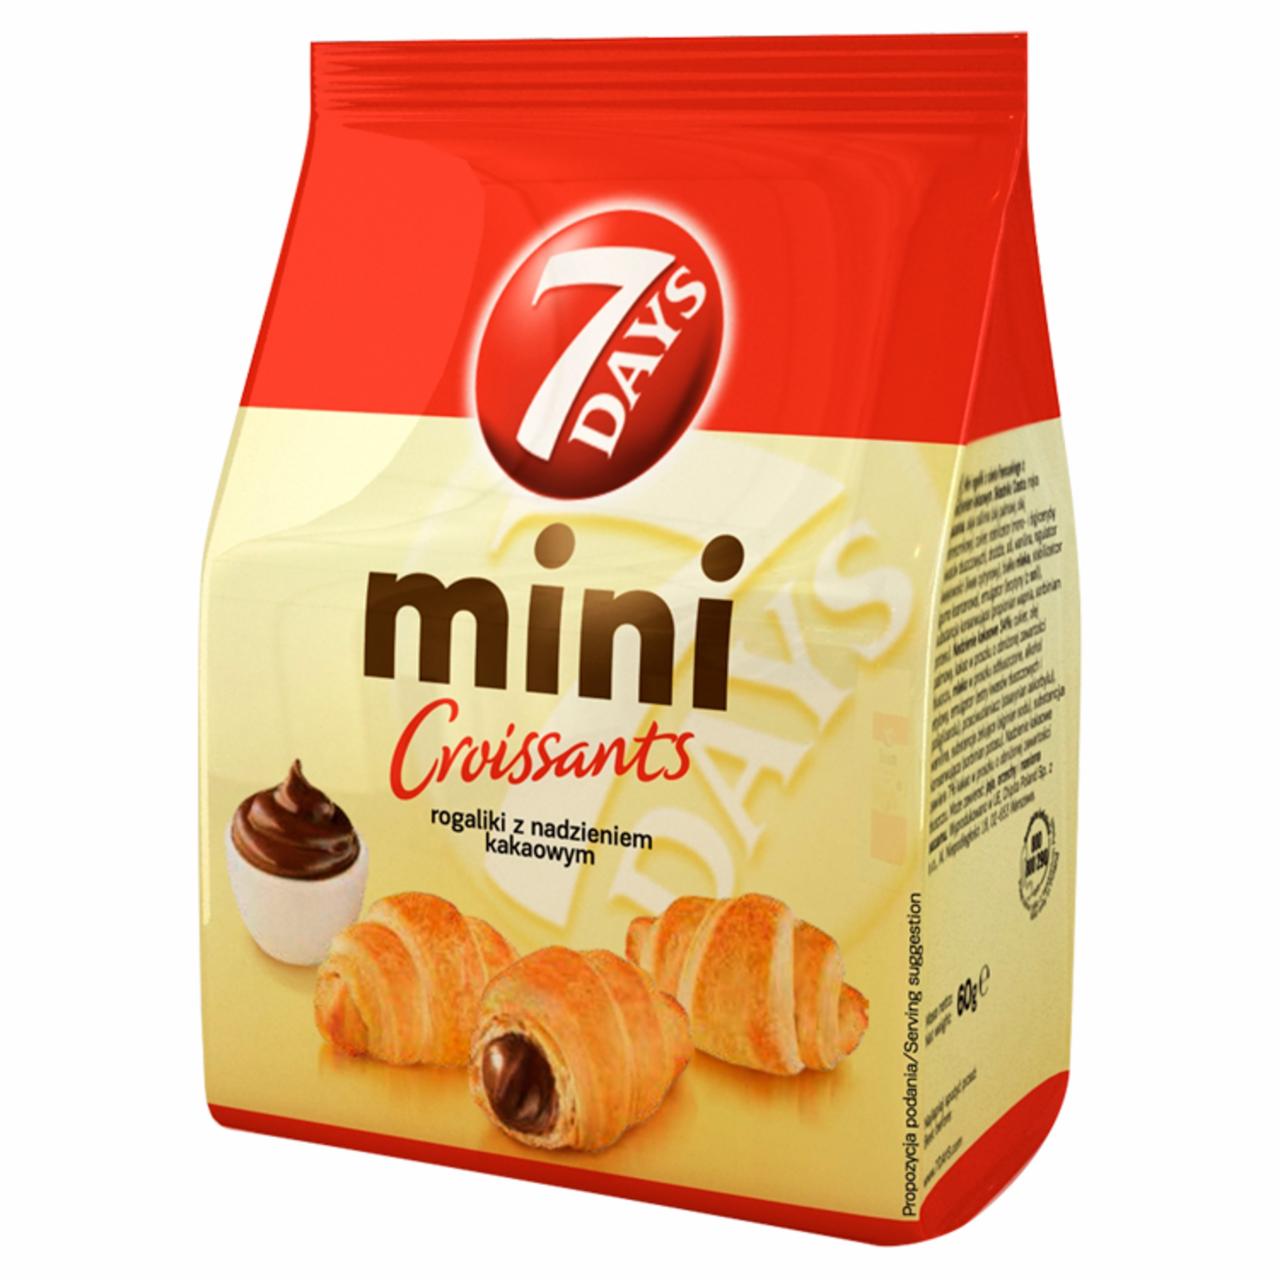 Zdjęcia - 7 Days Mini Croissant z nadzieniem kakaowym 60 g